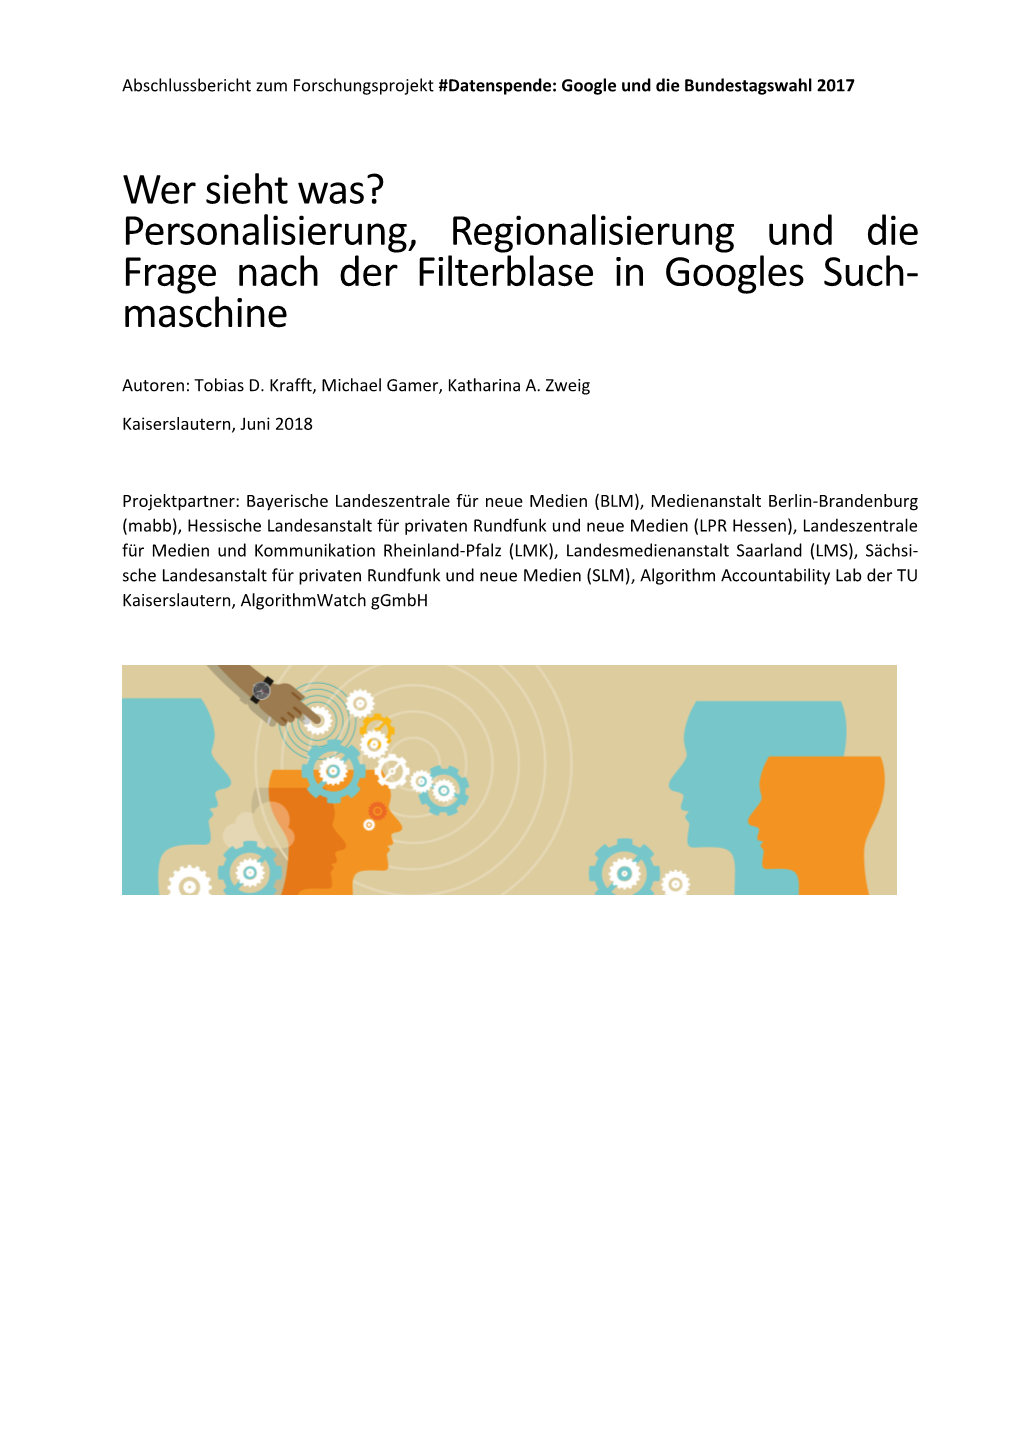 Personalisierung, Regionalisierung Und Die Frage Nach Der Filterblase in Googles Such- Maschine